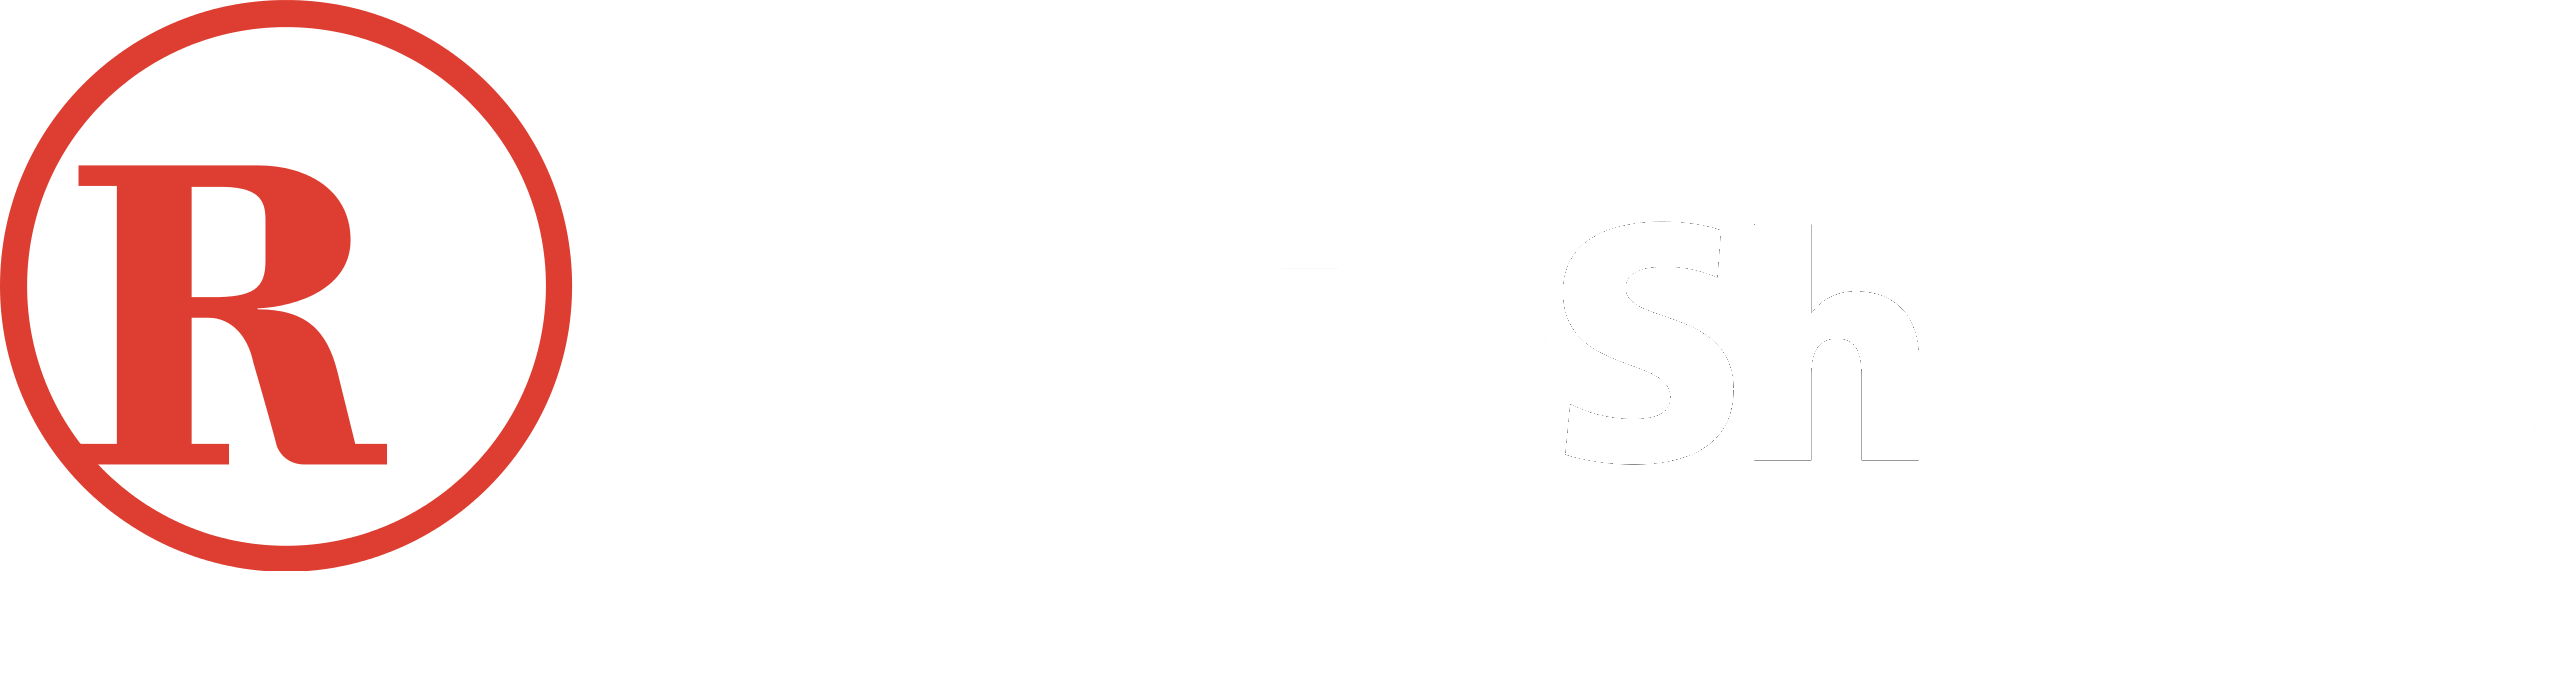 RadioShack of Bozeman